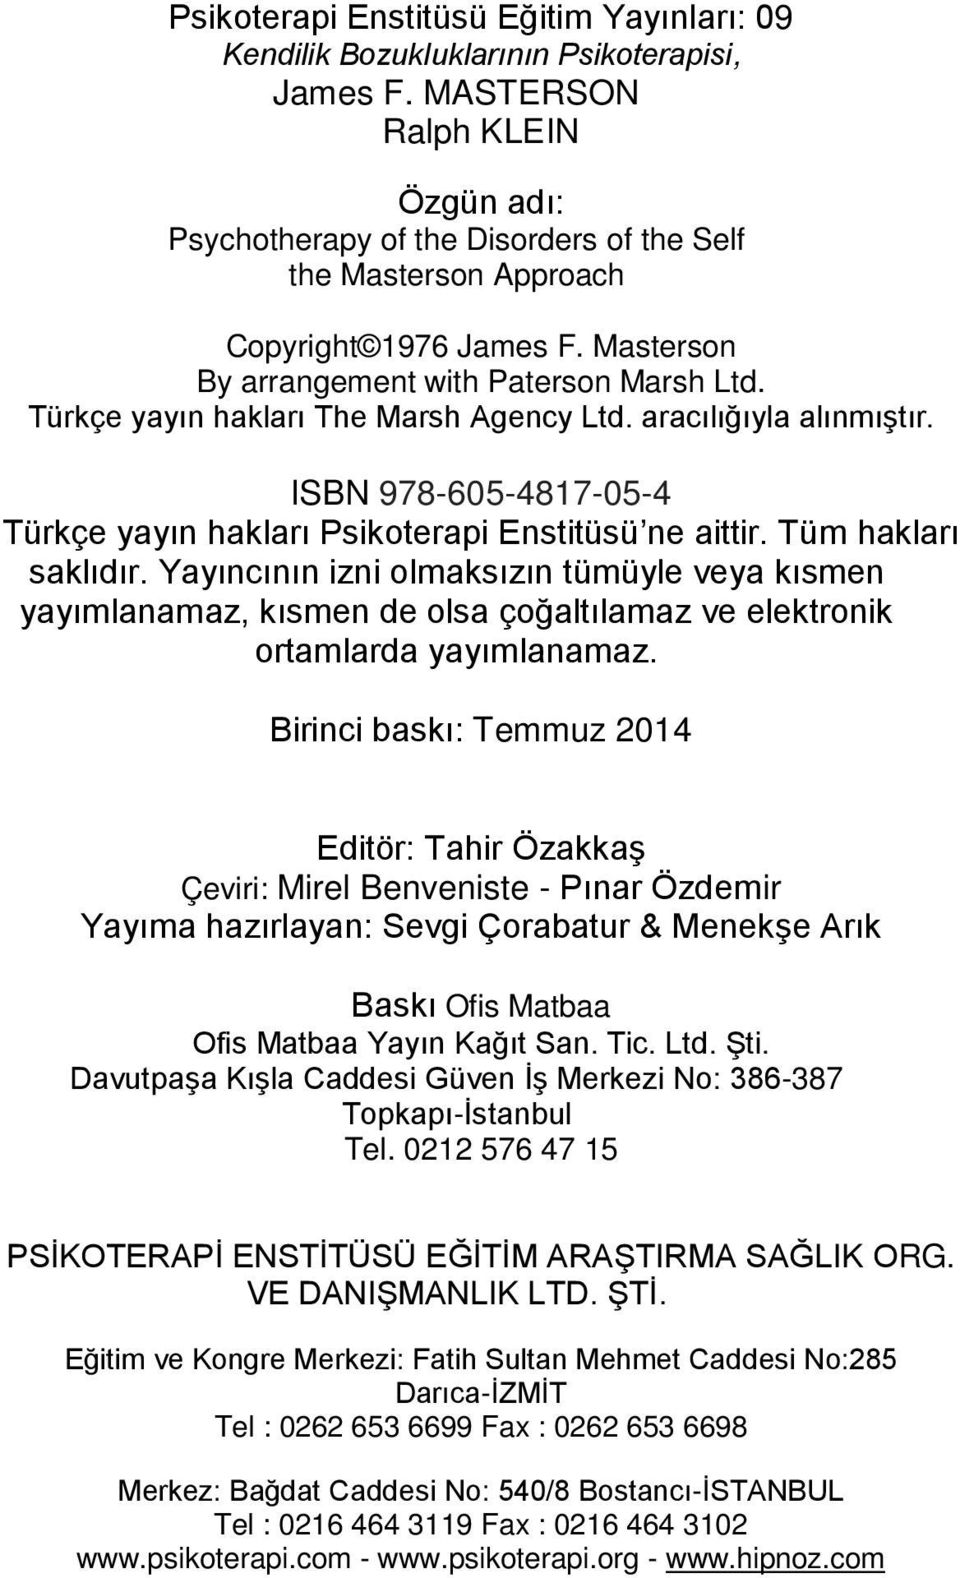 Türkçe yayın hakları The Marsh Agency Ltd. aracılığıyla alınmıştır. ISBN 978-605-4817-05-4 Türkçe yayın hakları Psikoterapi Enstitüsü ne aittir. Tüm hakları saklıdır.